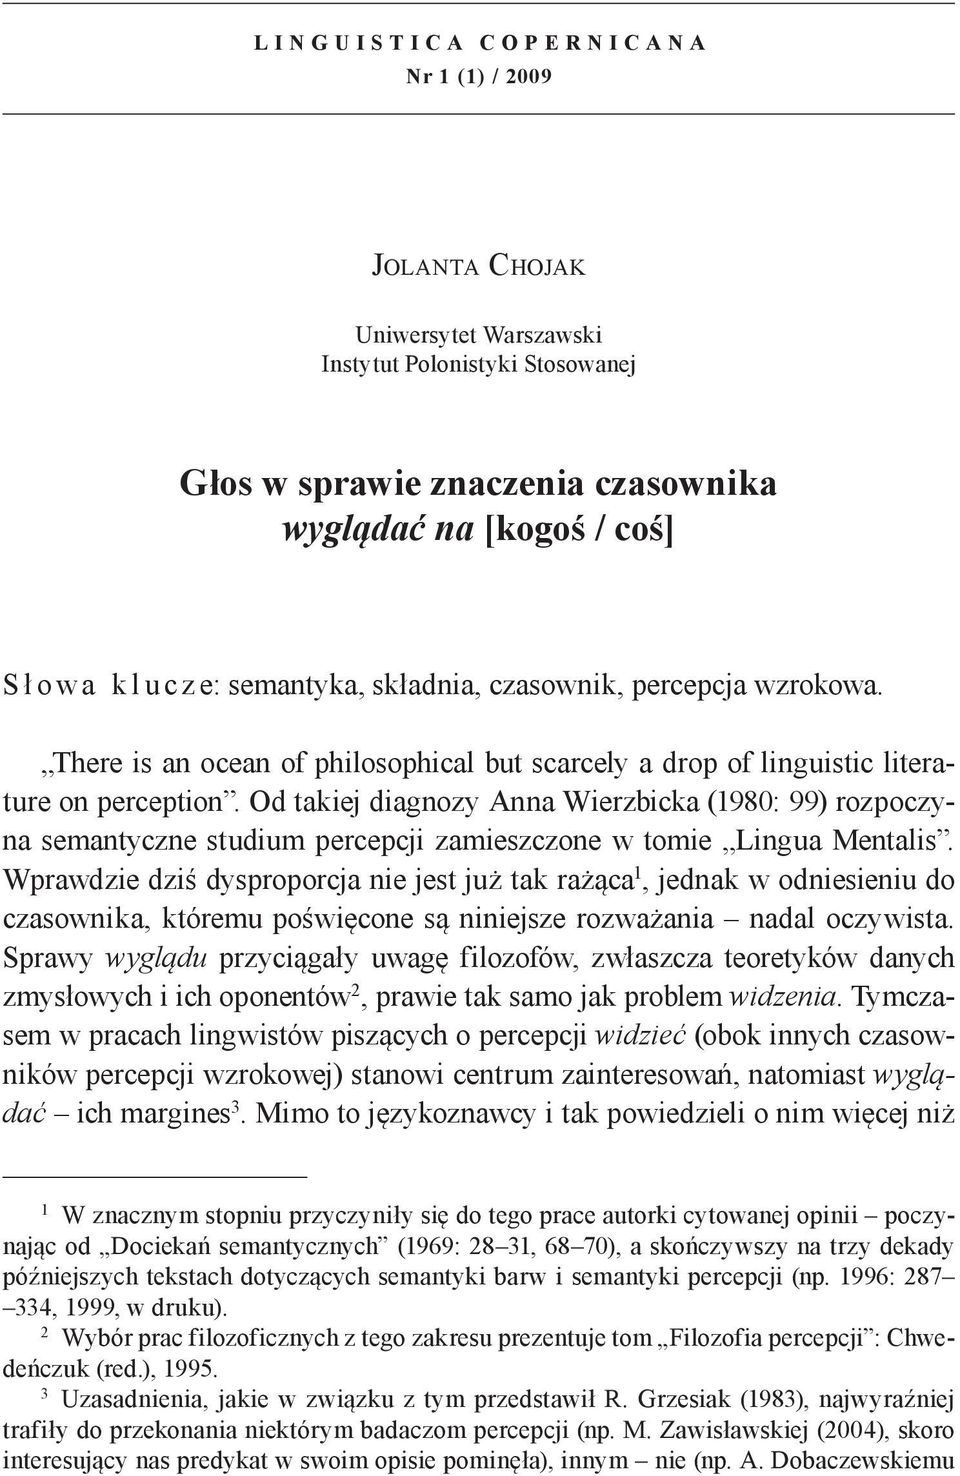 Od takiej diagnozy Anna Wierzbicka (1980: 99) rozpoczyna semantyczne studium percepcji zamieszczone w tomie Lingua Mentalis.